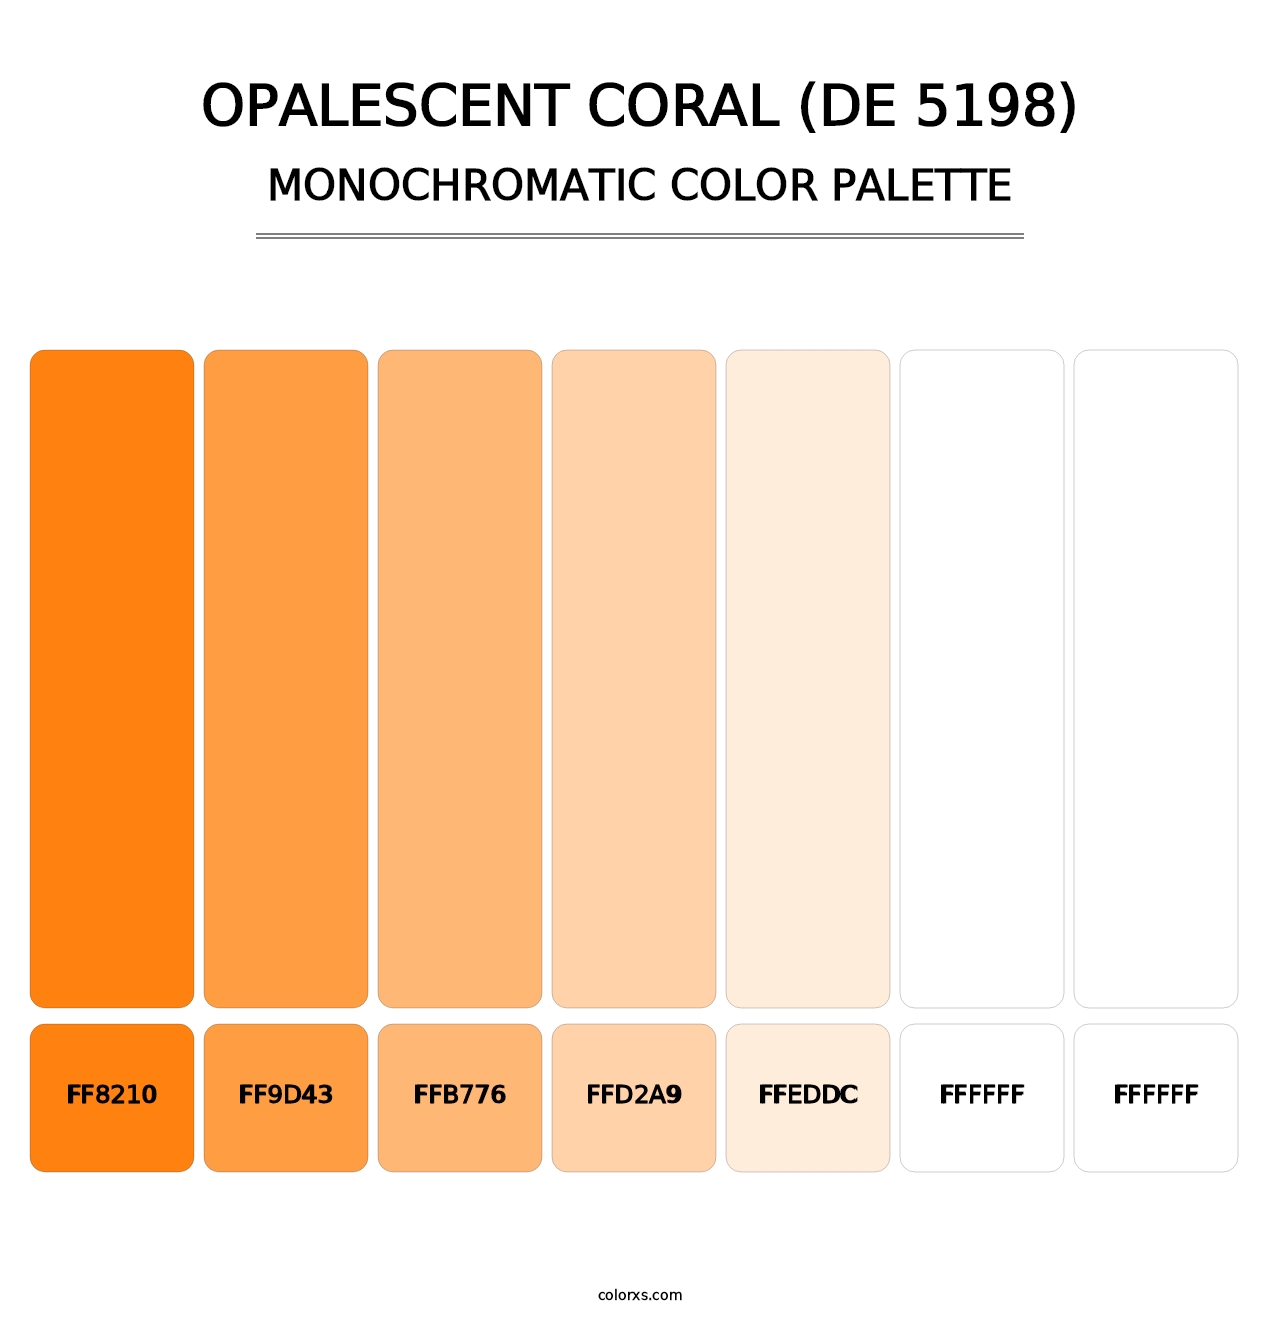 Opalescent Coral (DE 5198) - Monochromatic Color Palette